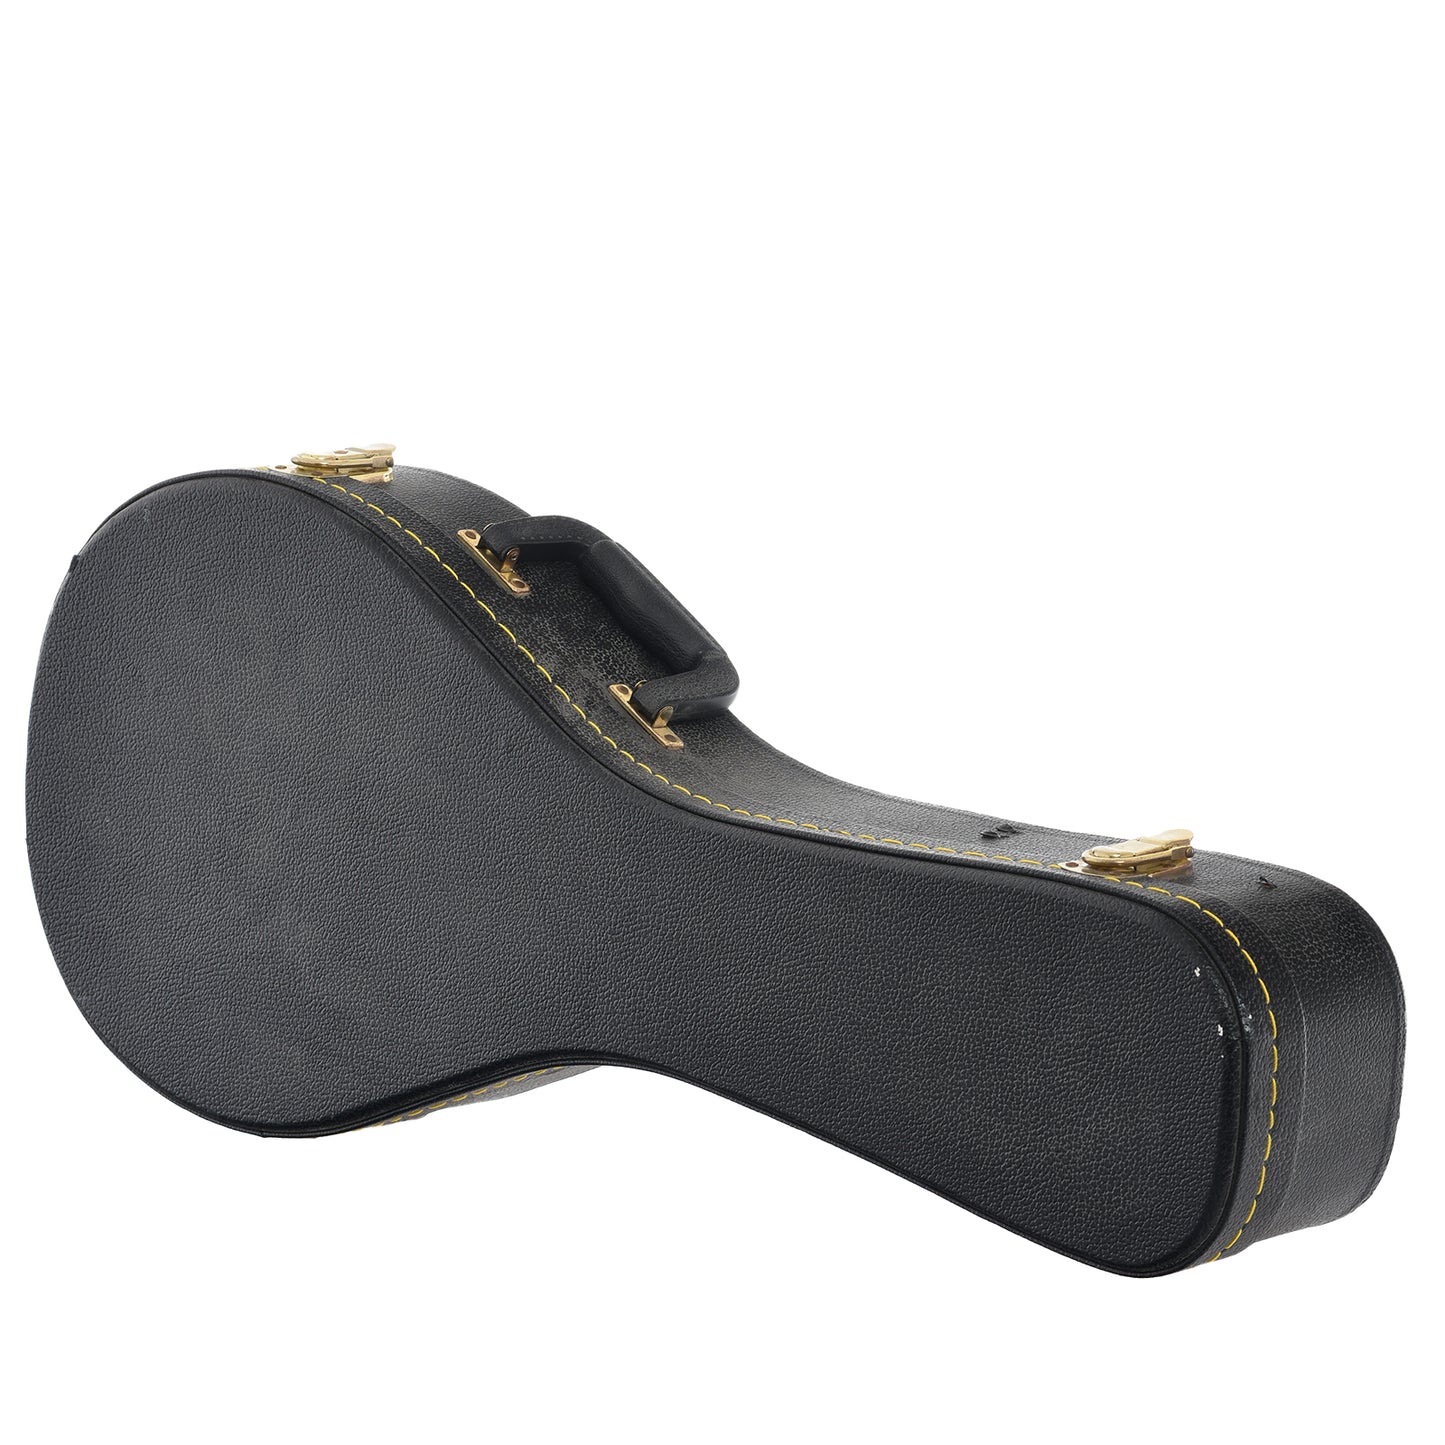 Case for Gibson A-1 Mandolin